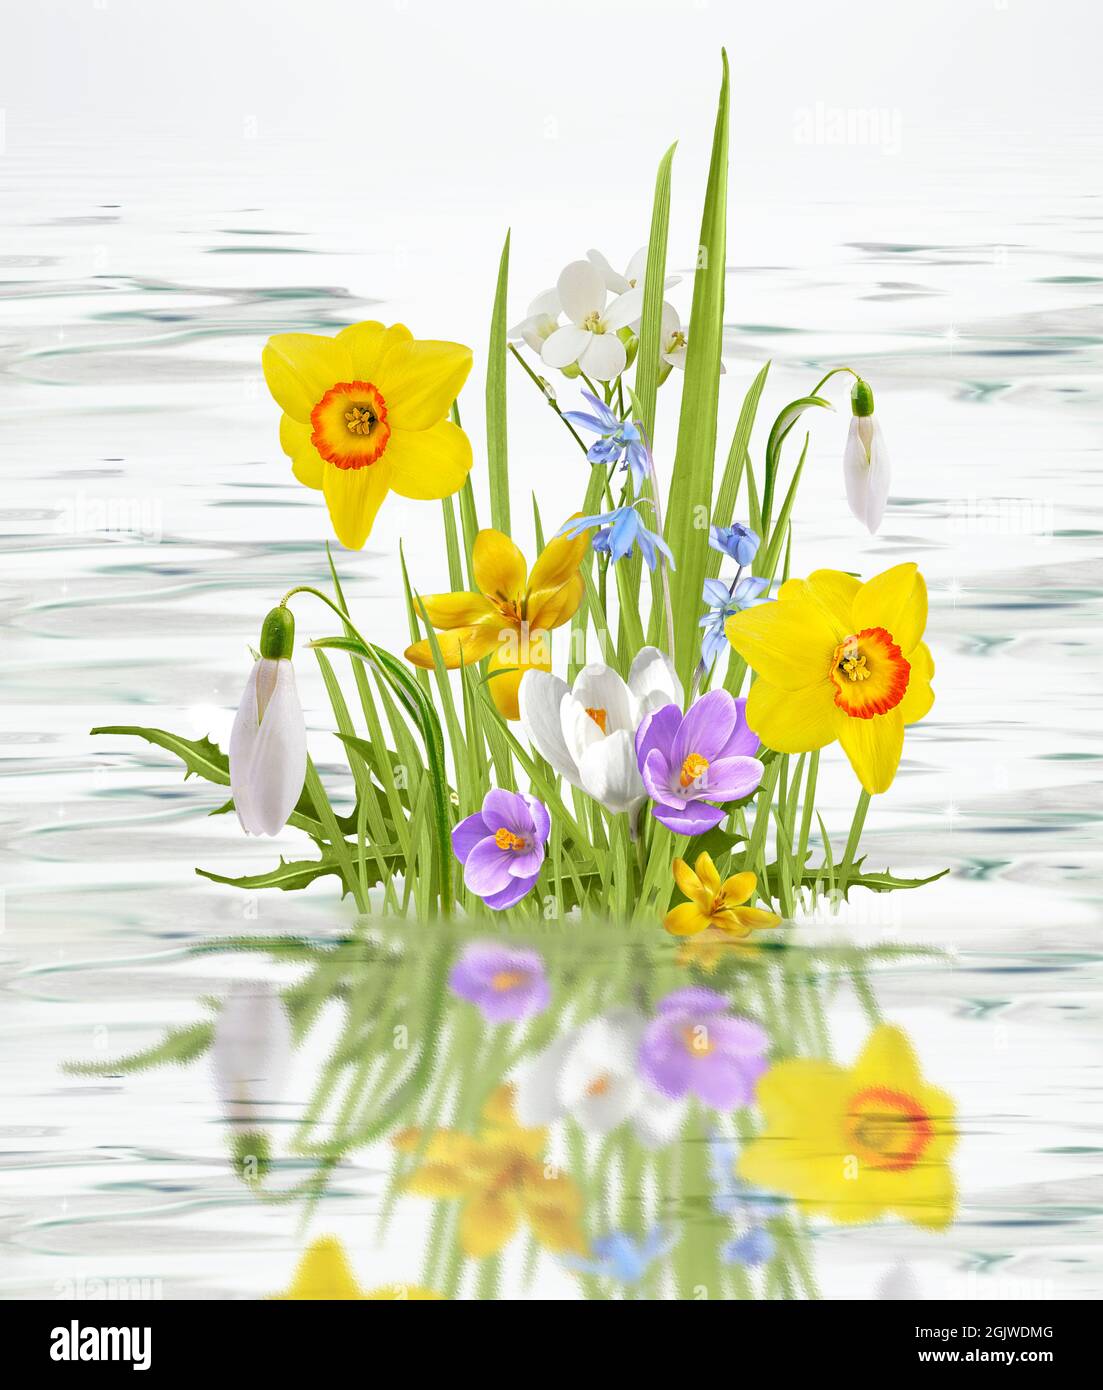 Schöne wilde Blumen Kamille, Schmetterling am Morgen Dunst in der Natur reizvolle luftige künstlerische Bild. Stockfoto